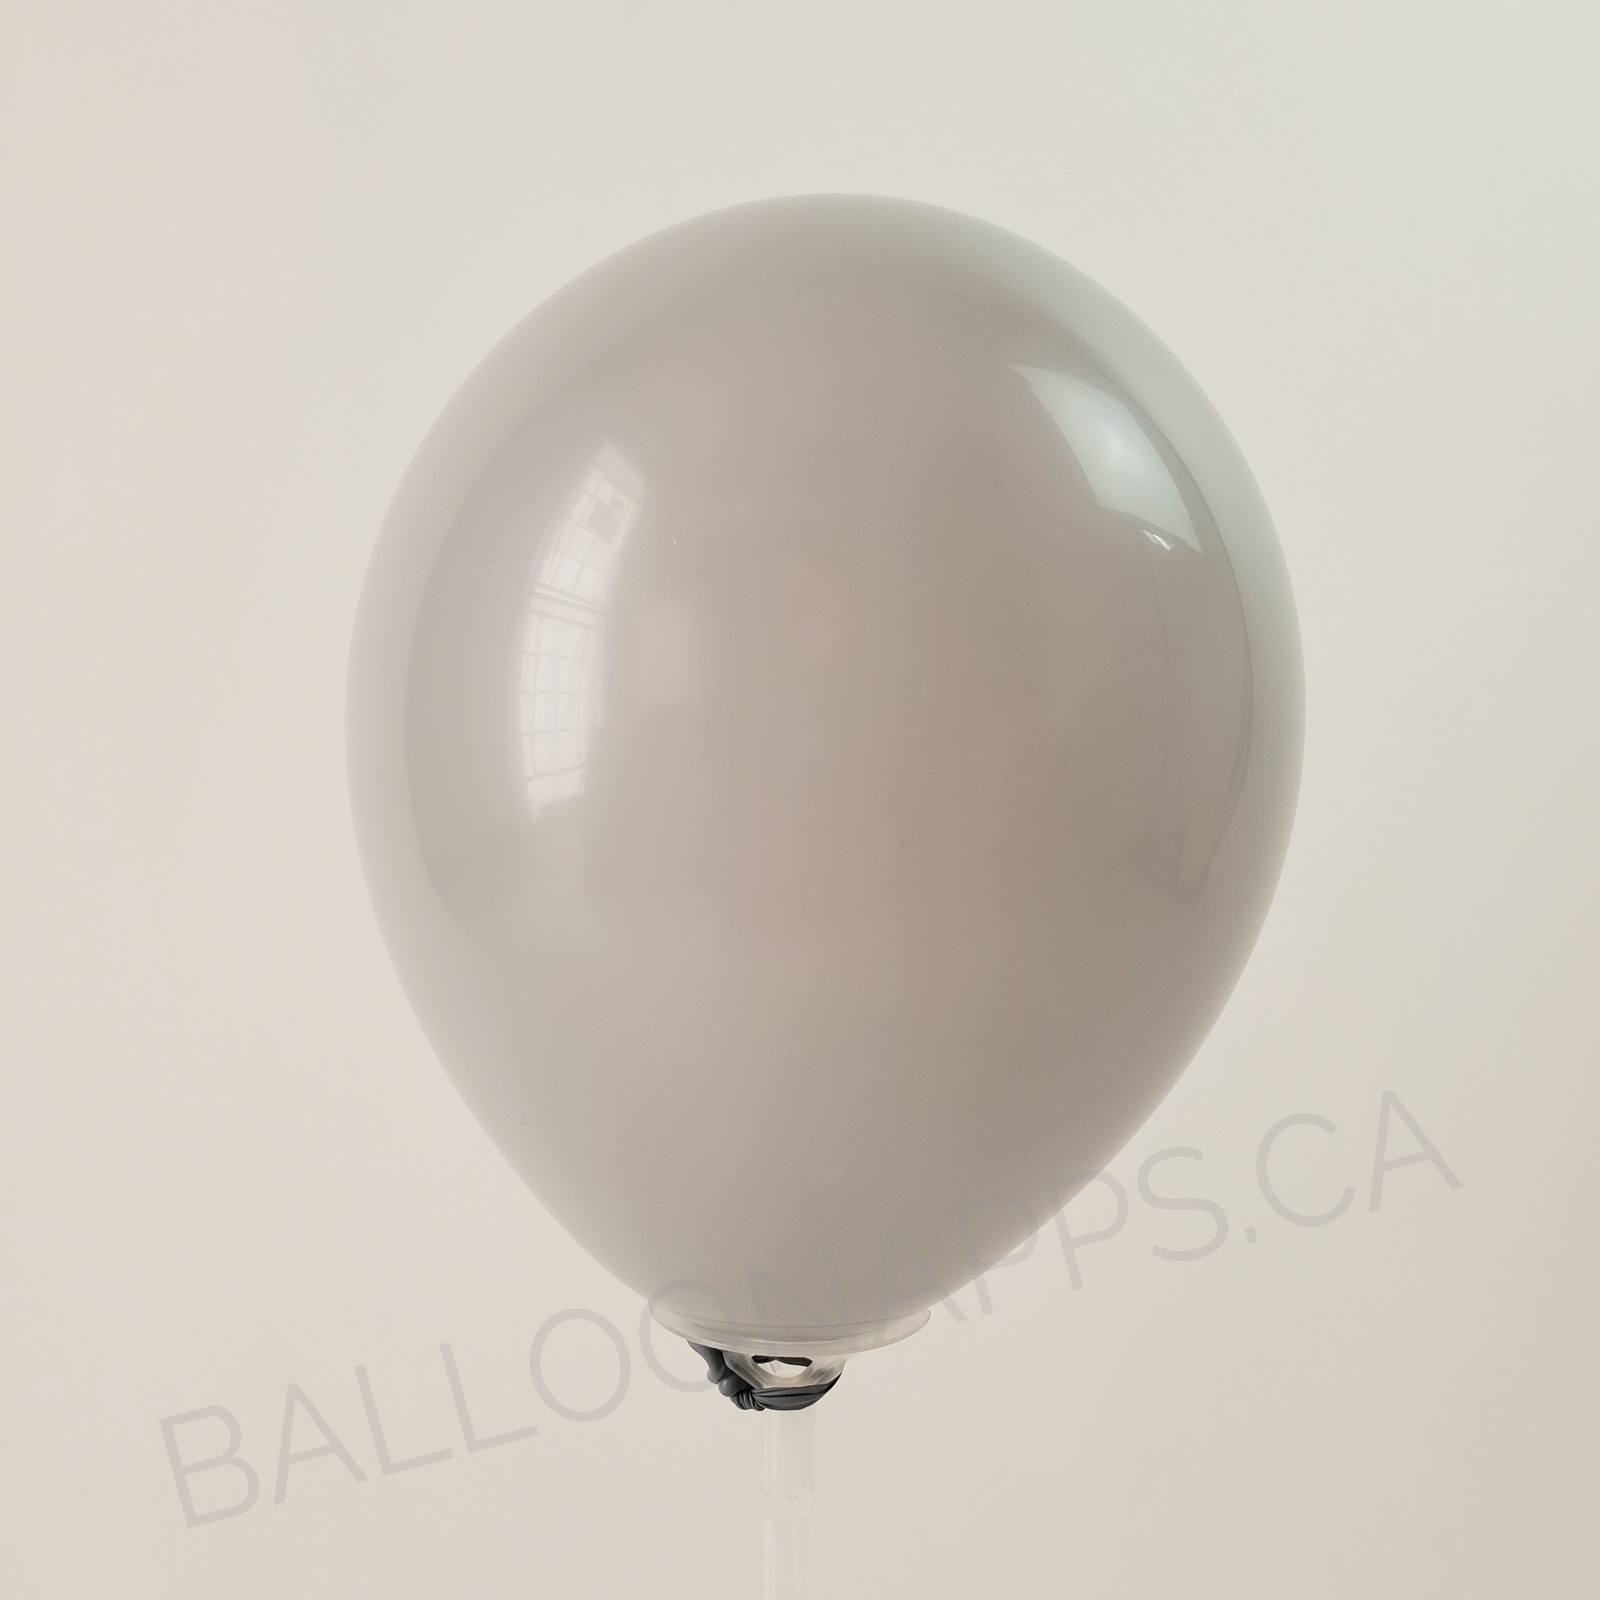 balloon texture Qualatex 350 Fashion Gray